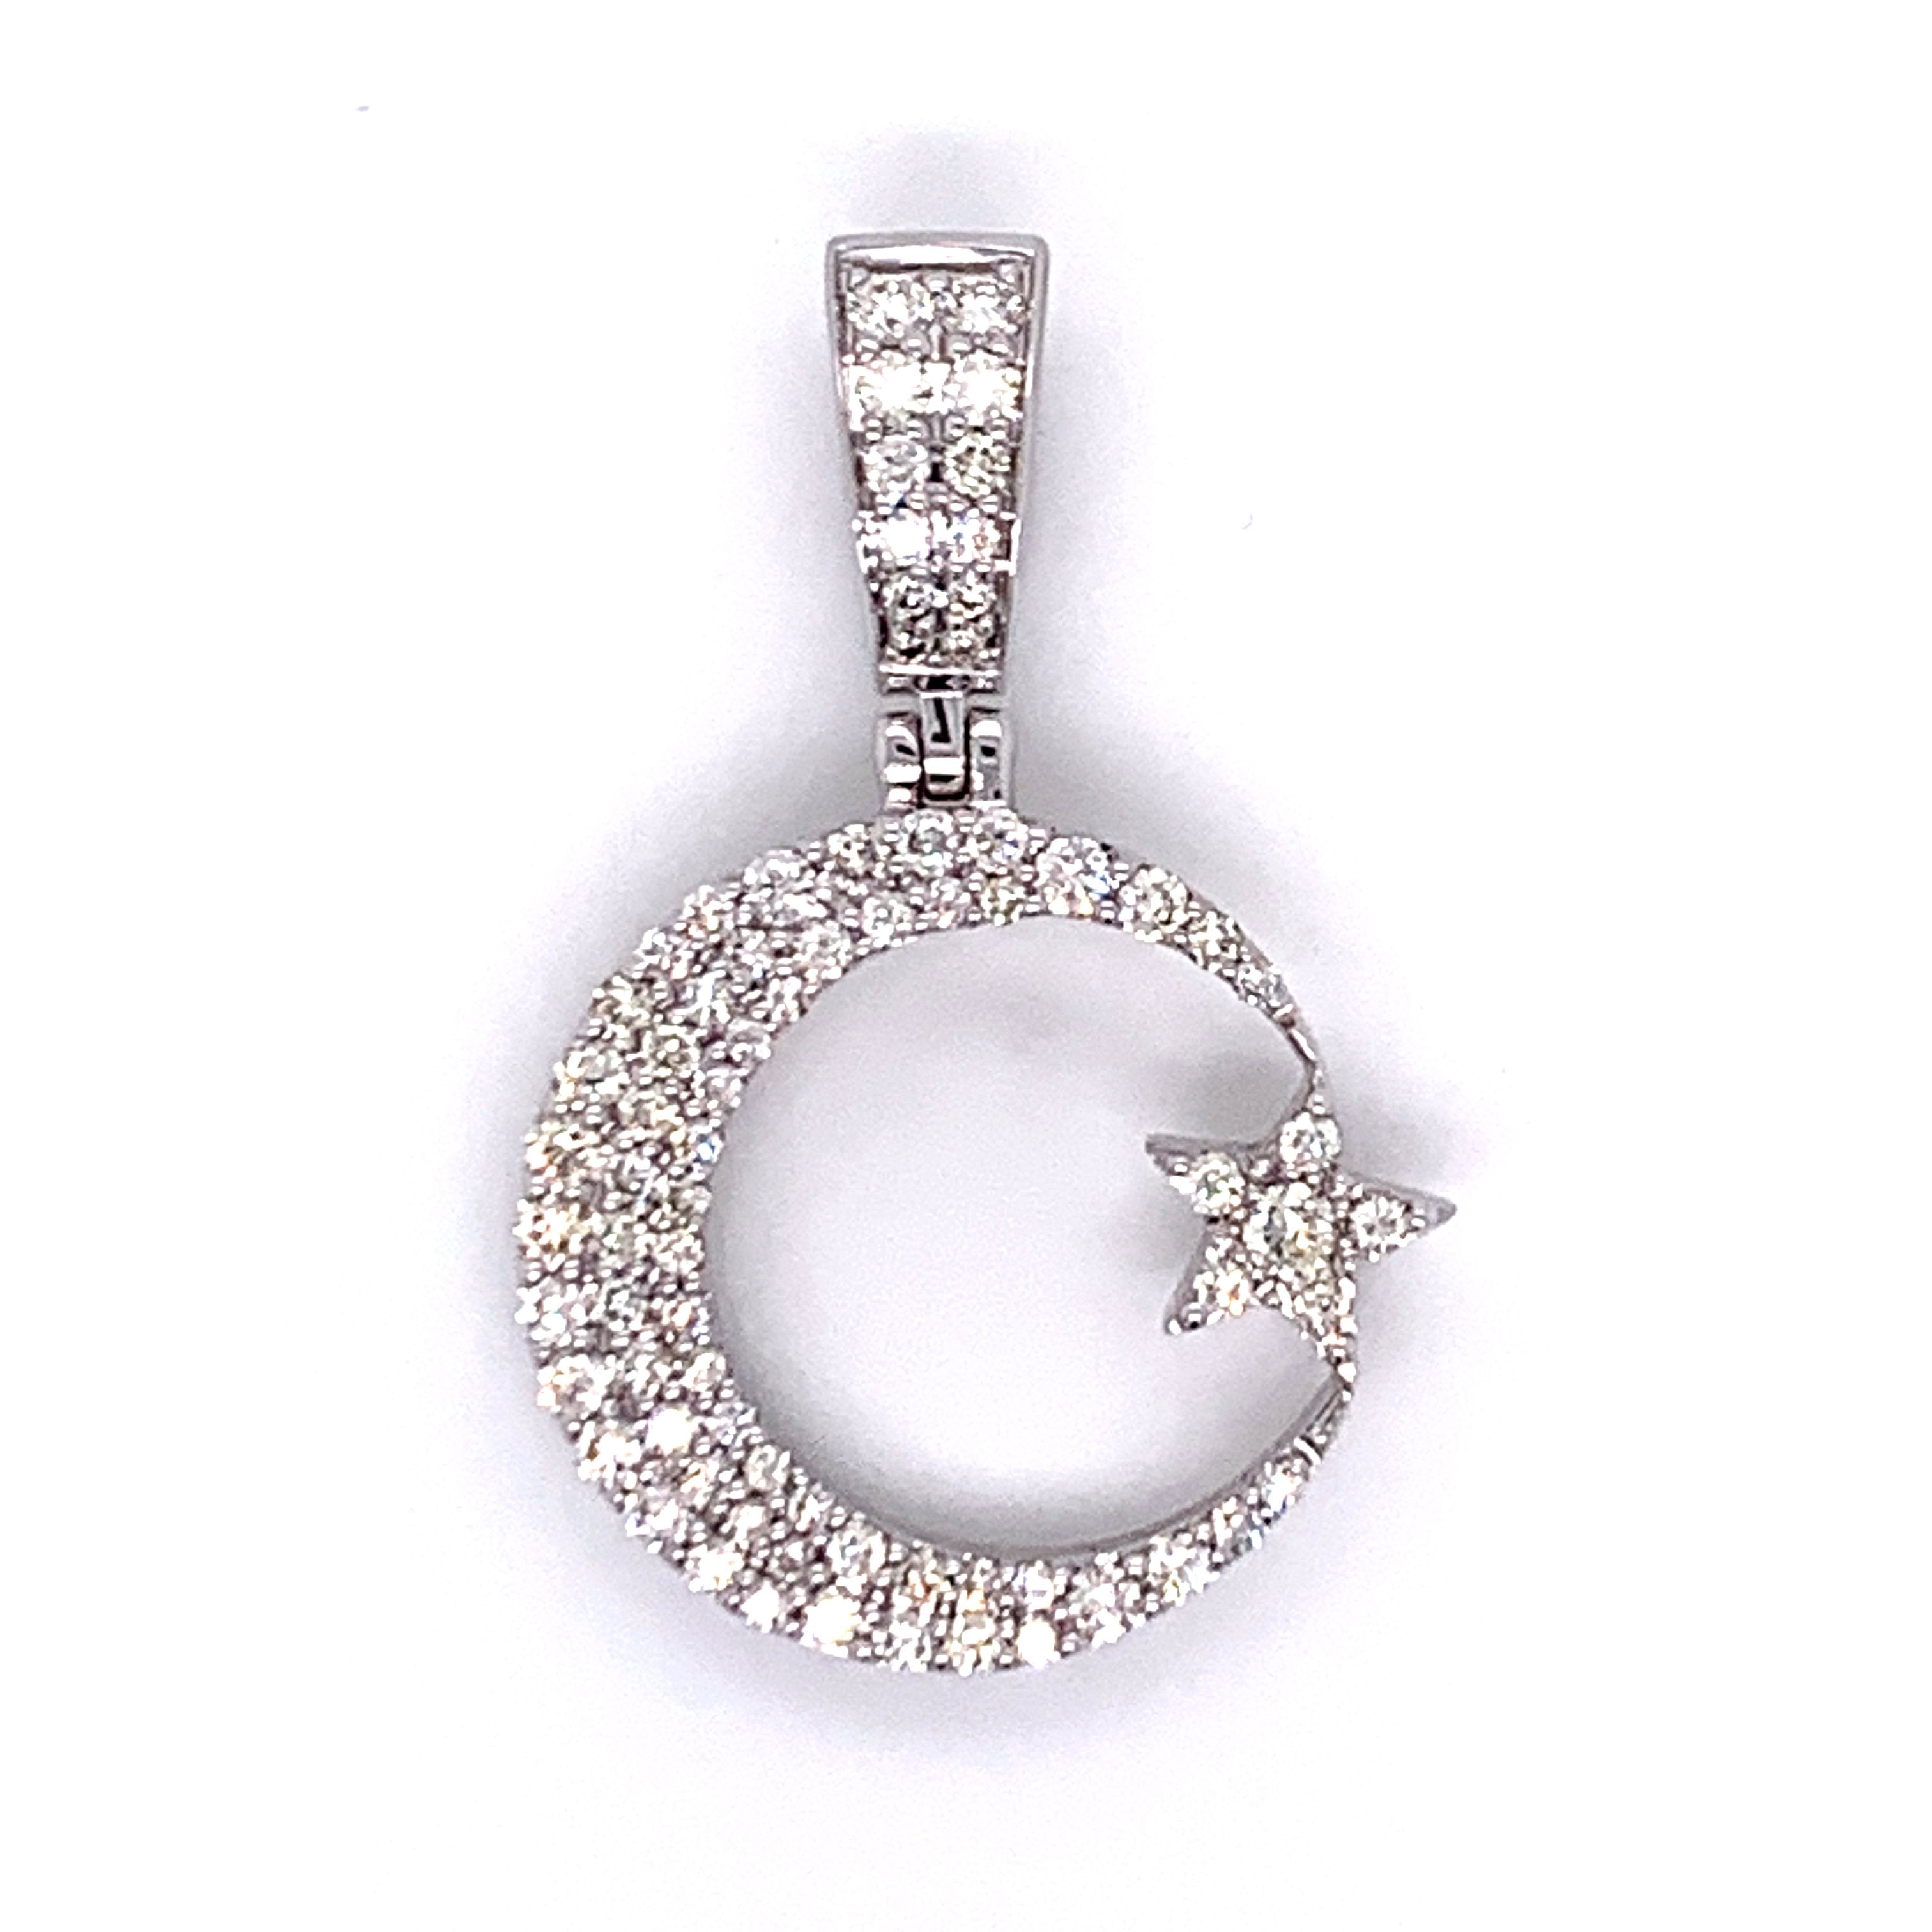 0.75 CT. Diamond Crescent and Star Pendant in 10K White Gold - White Carat Diamonds 